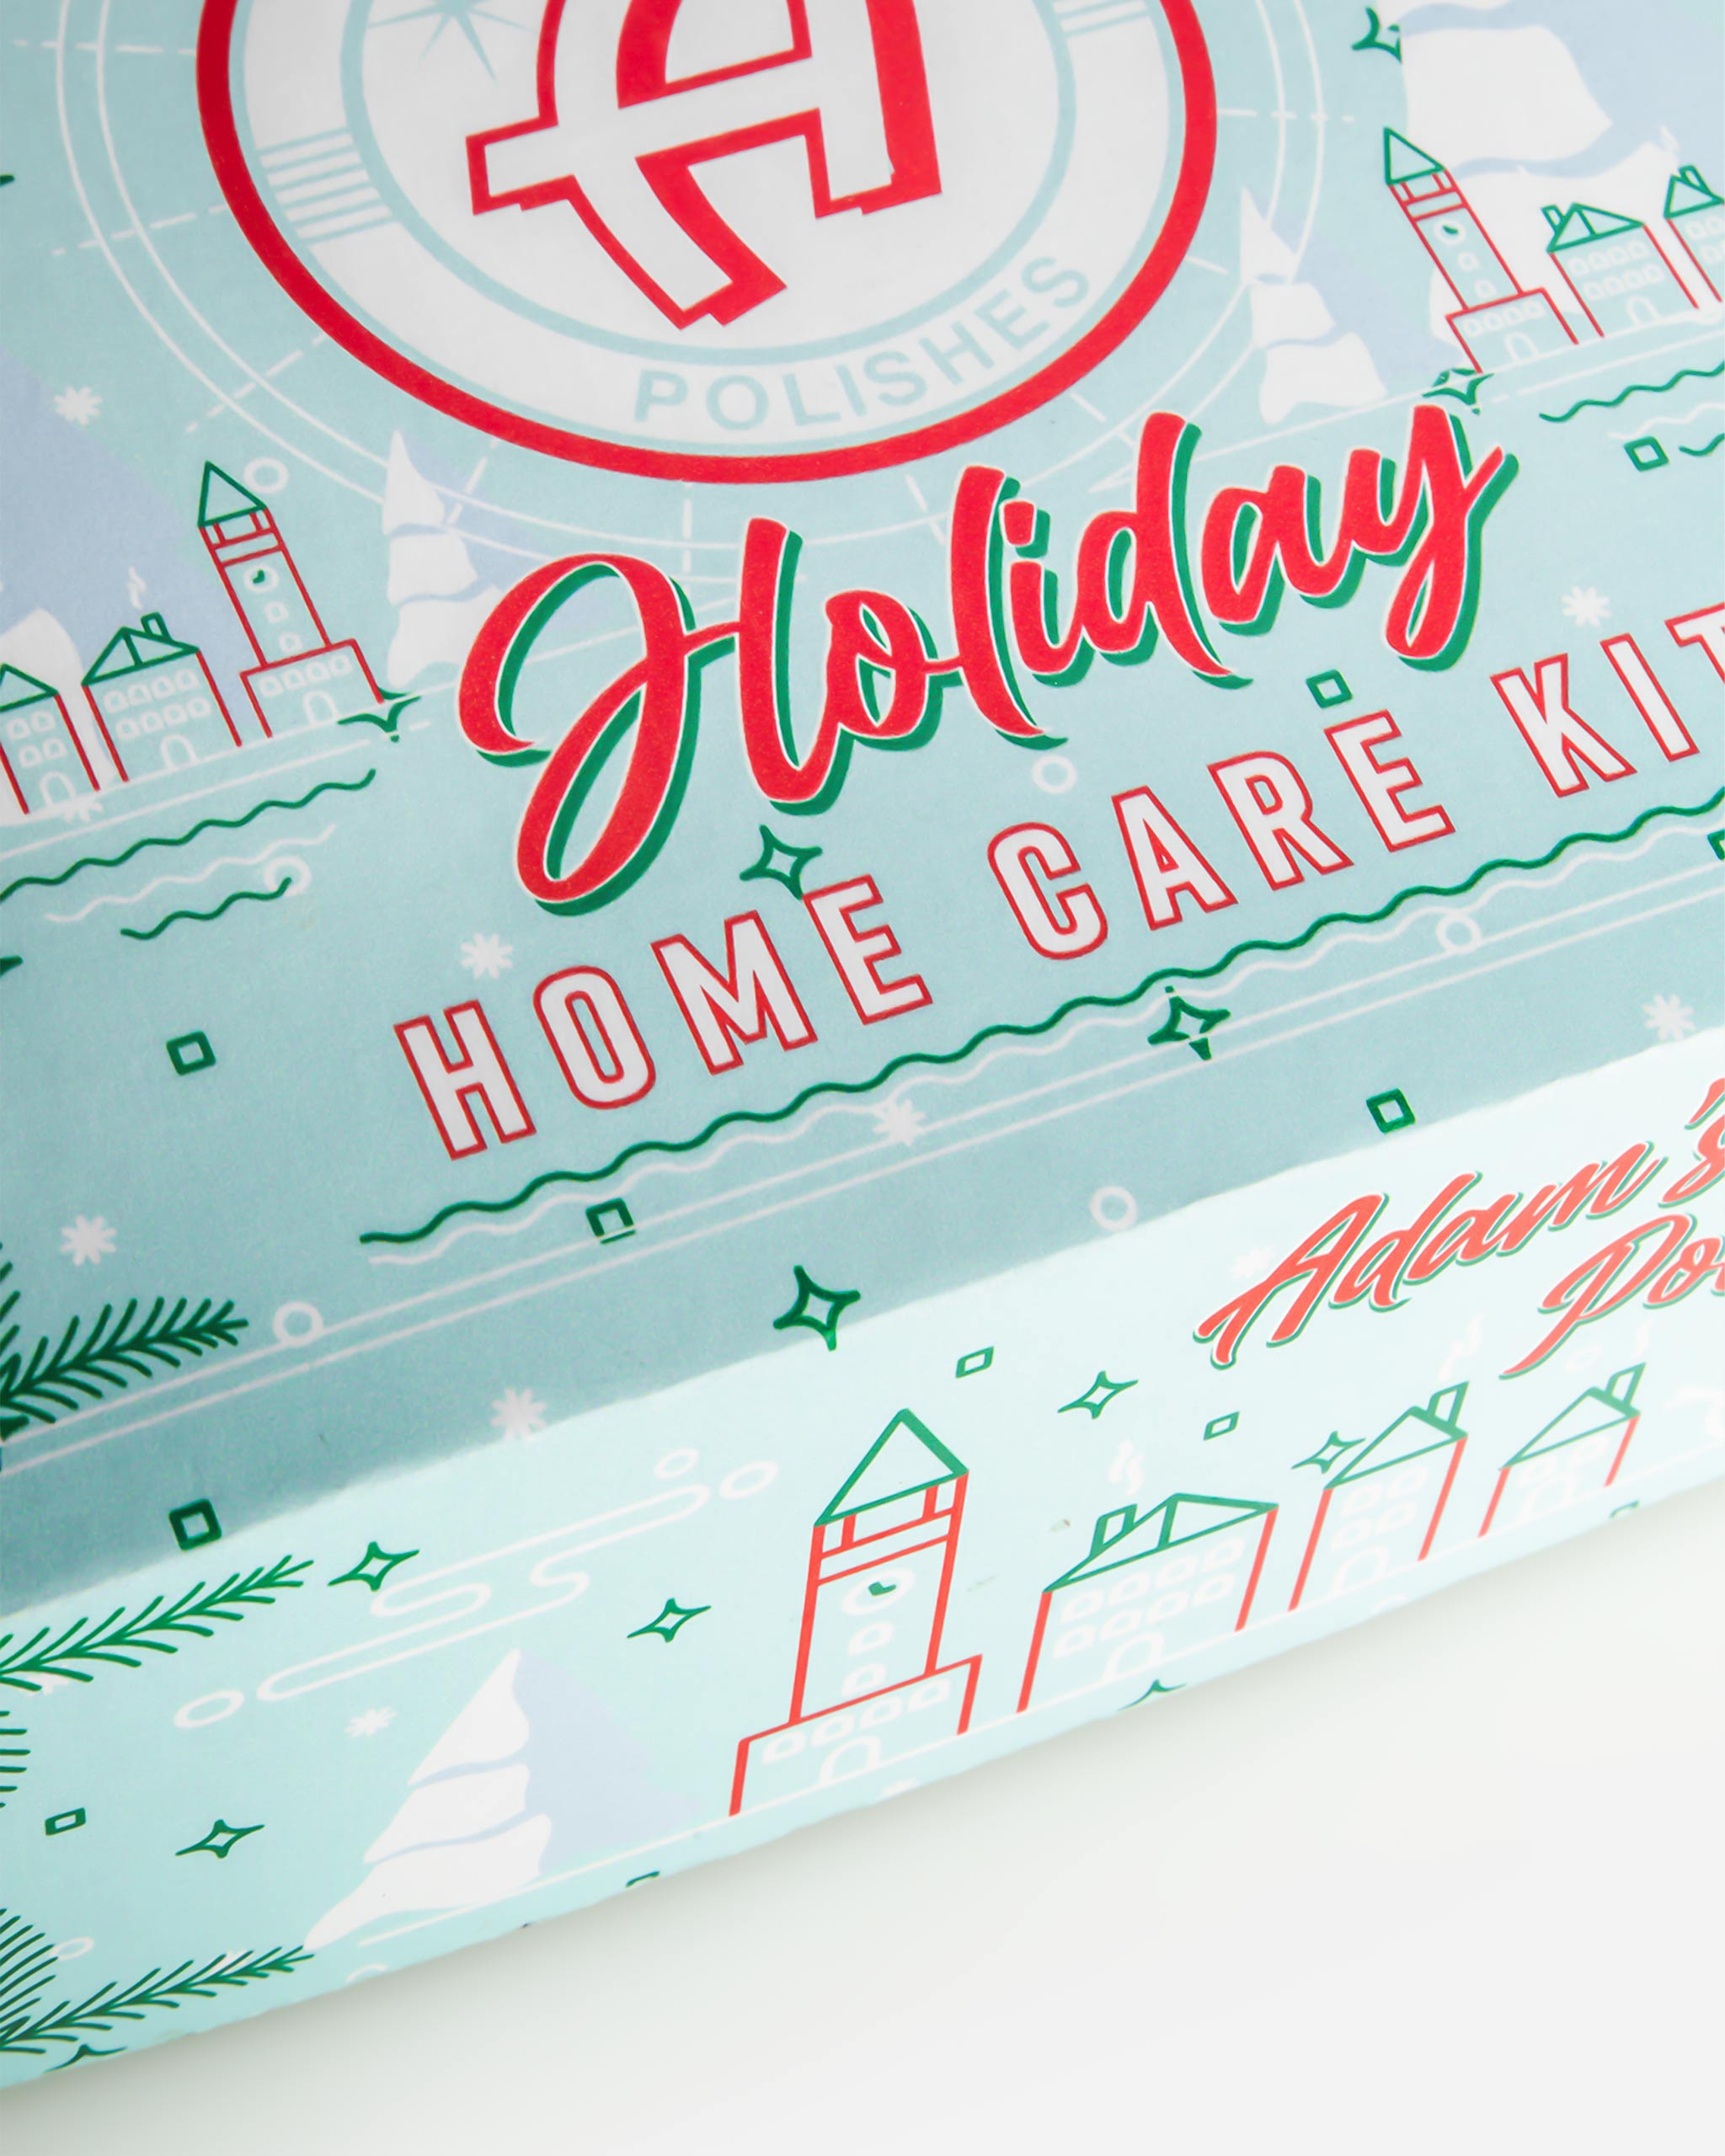 Adam's Home Care Holiday Box Set